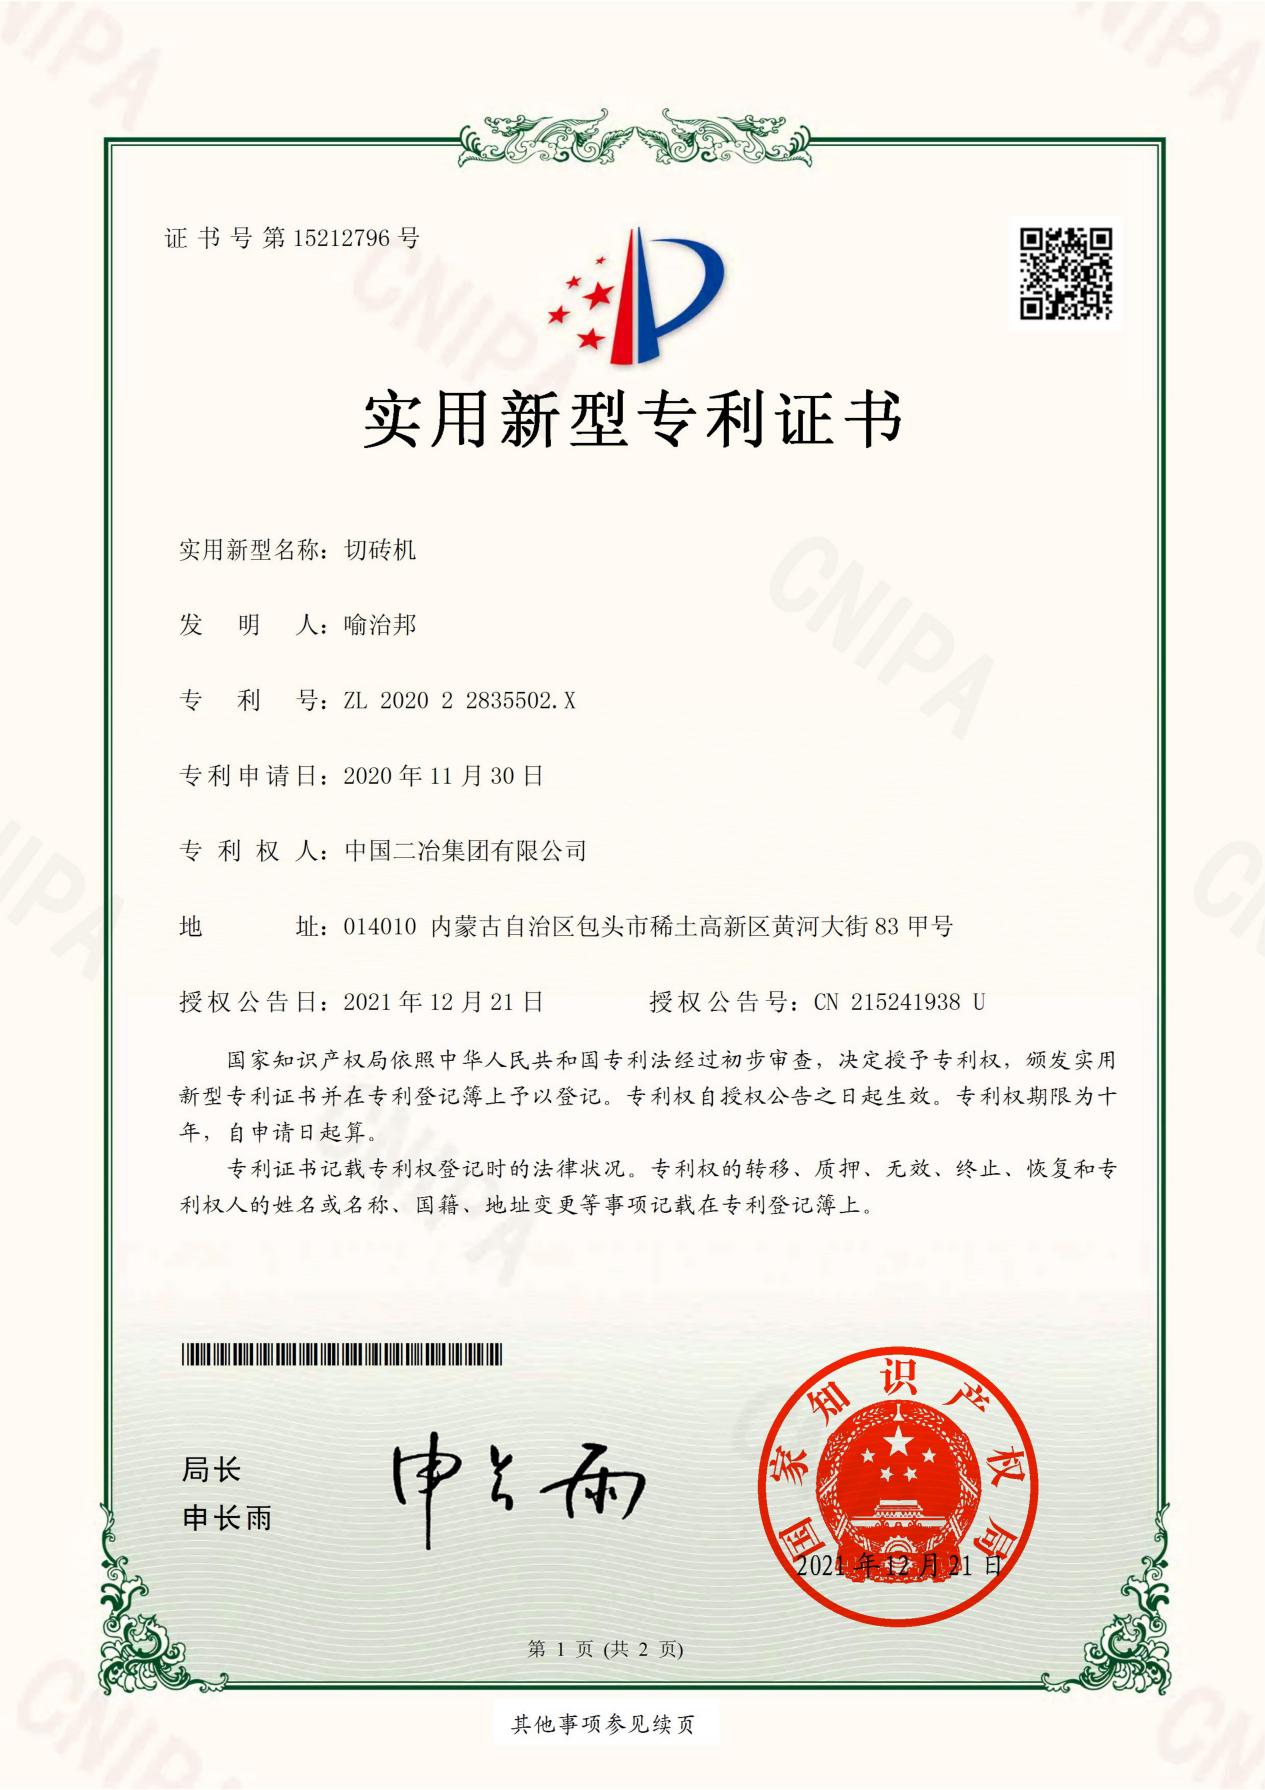 甘肃分公司-202022835502X-实用新型专利证书(签章)_00